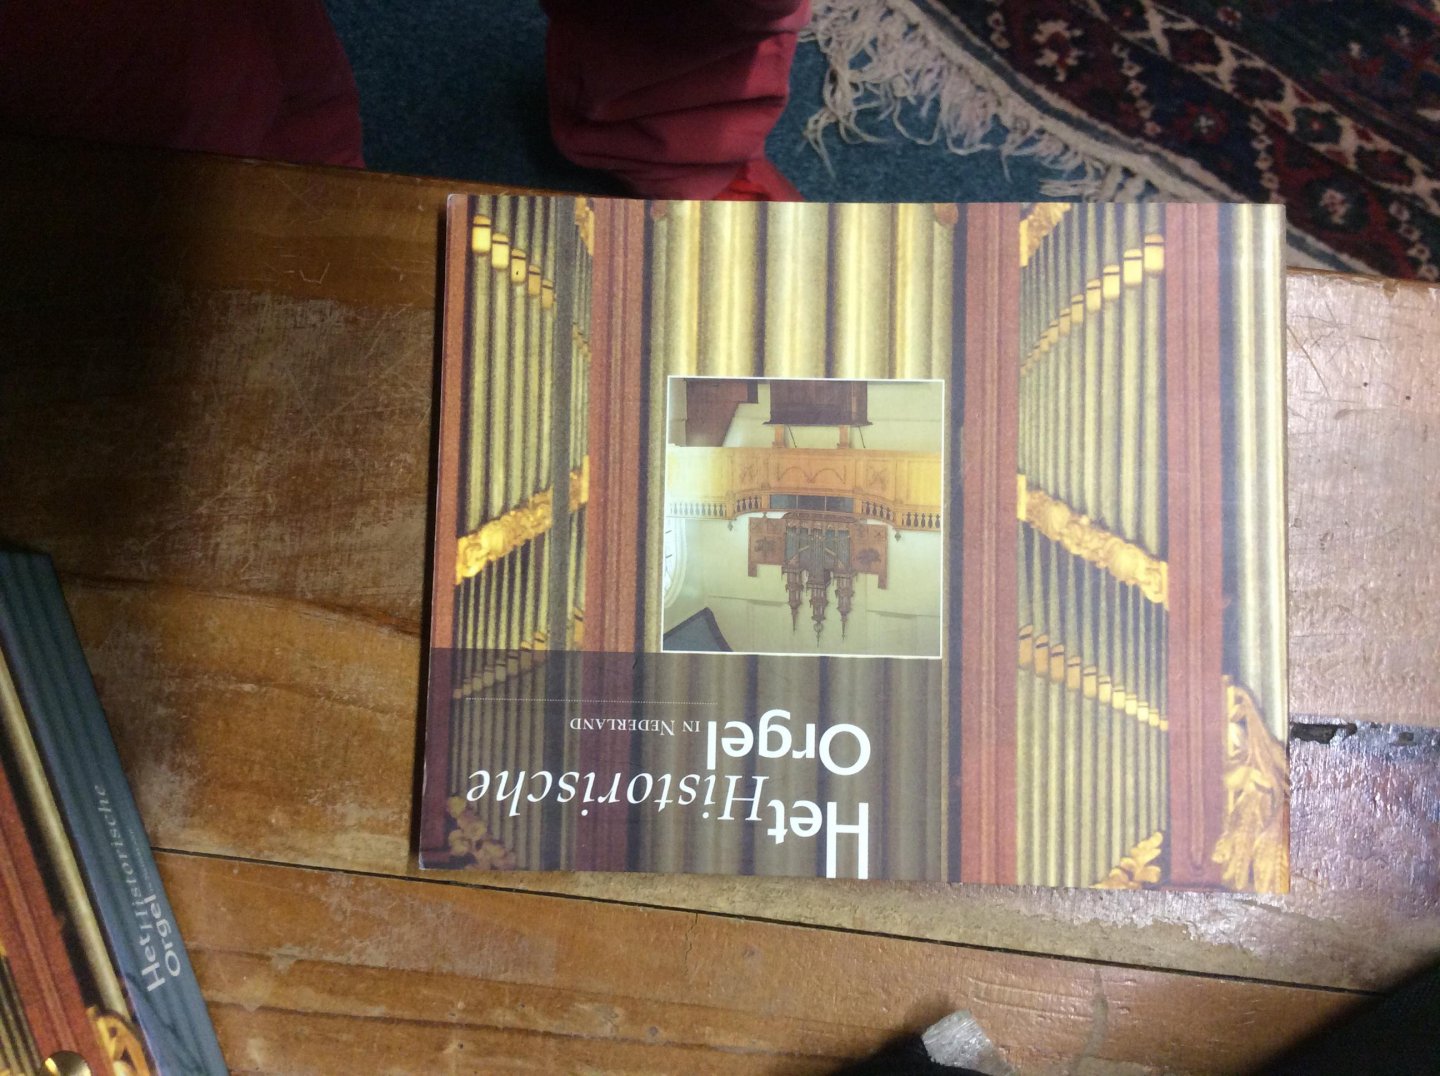 Nationaal Instituut voor de Orgelkunst - Het Historische Orgel in Nederland. 12 CD's met boek